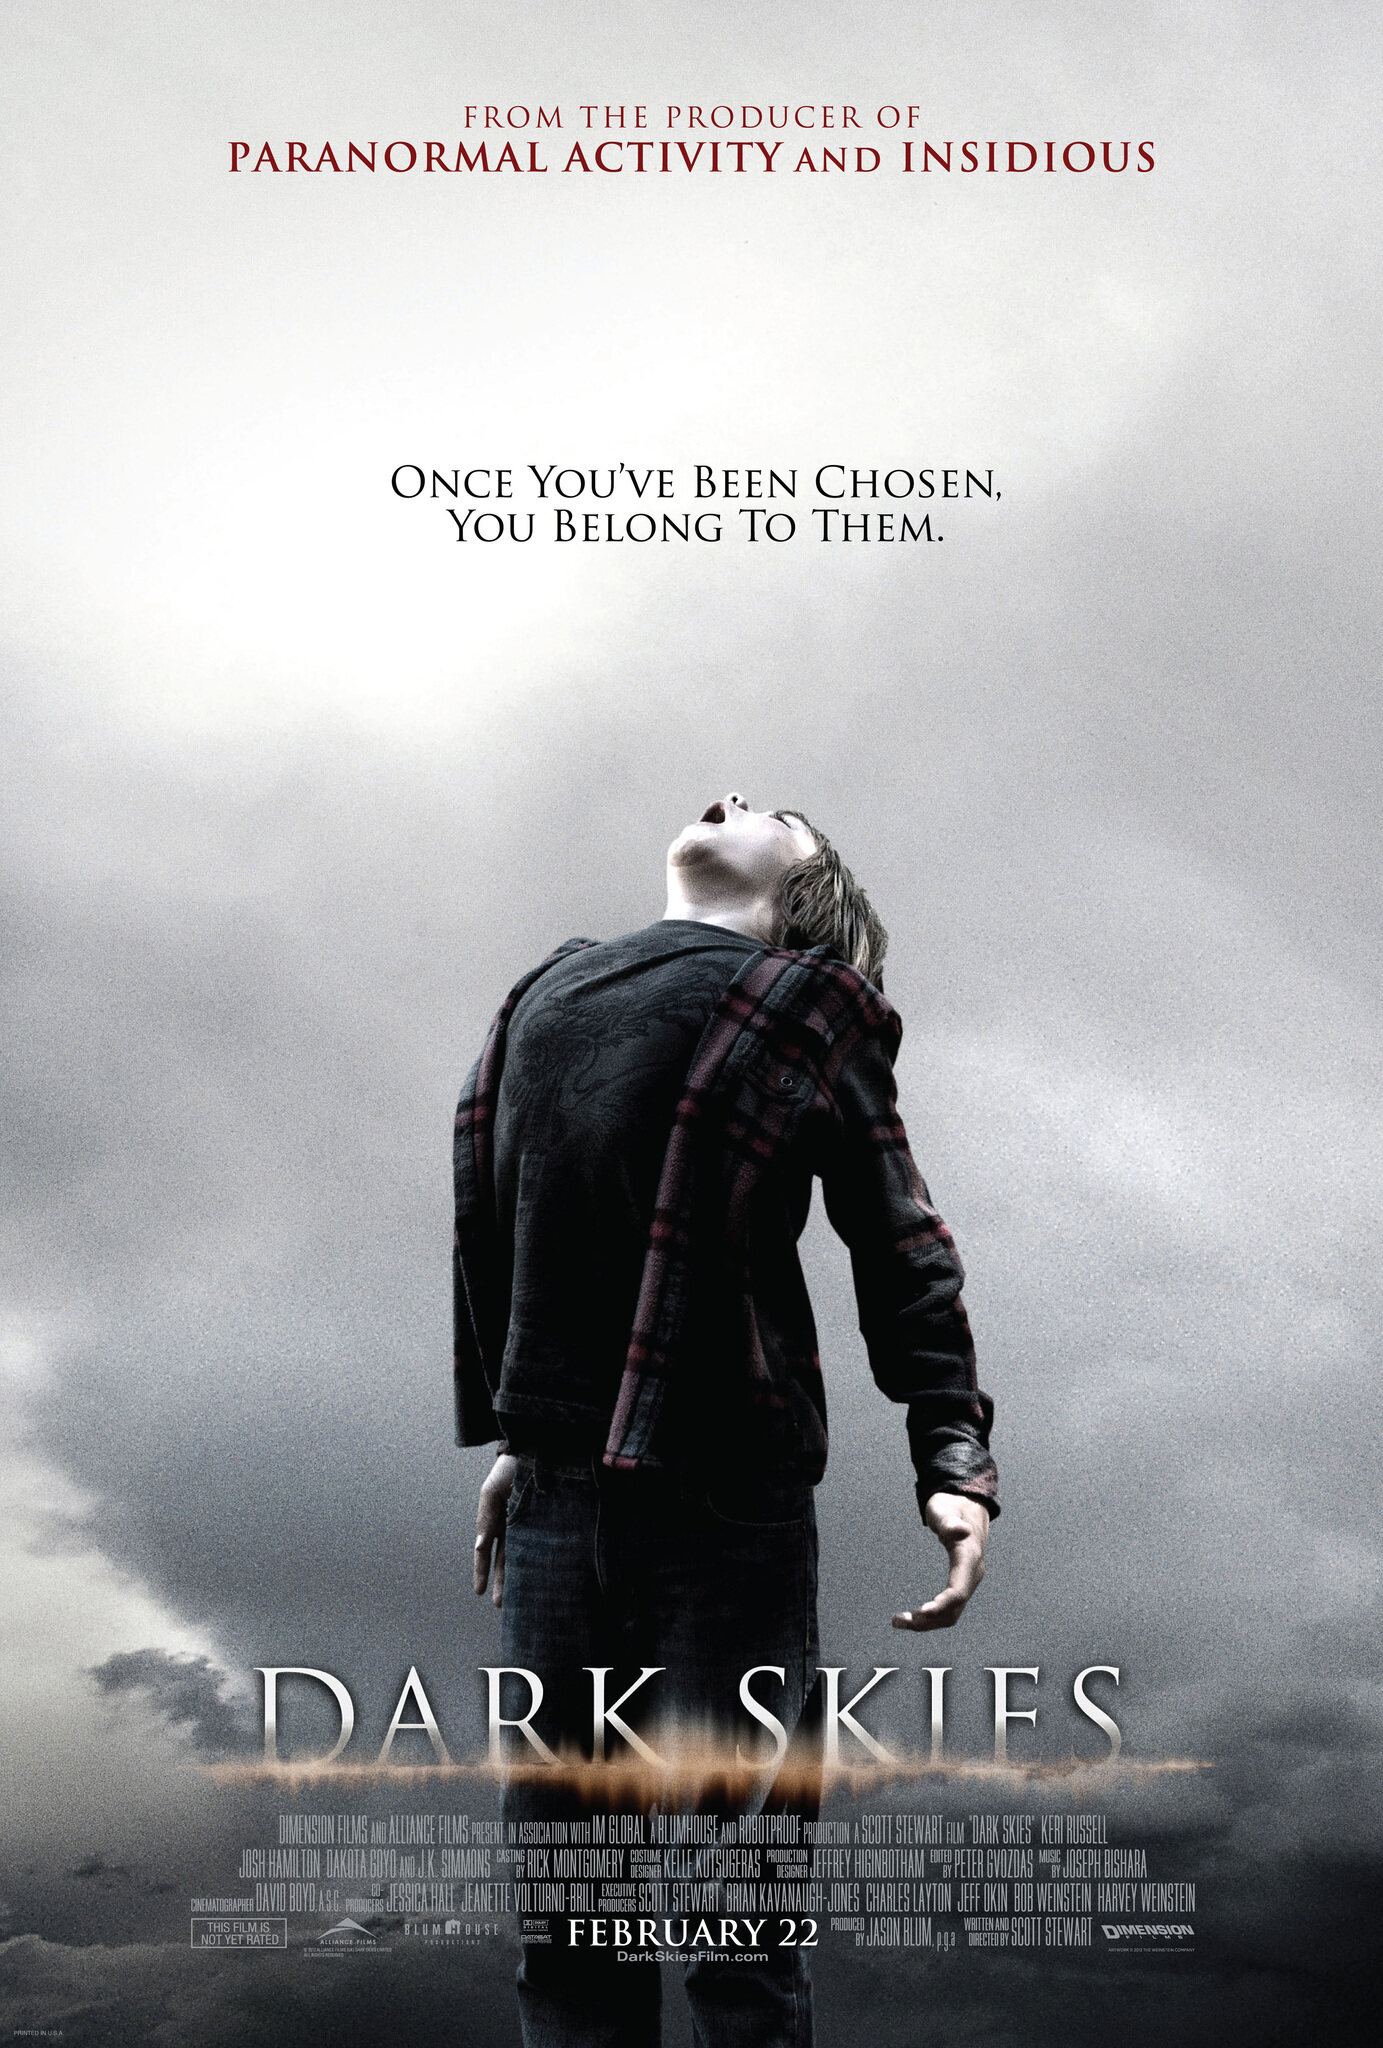 ดูหนังออนไลน์ฟรี มฤตยูมืดสยองโลก 2013 Dark Skies 2013